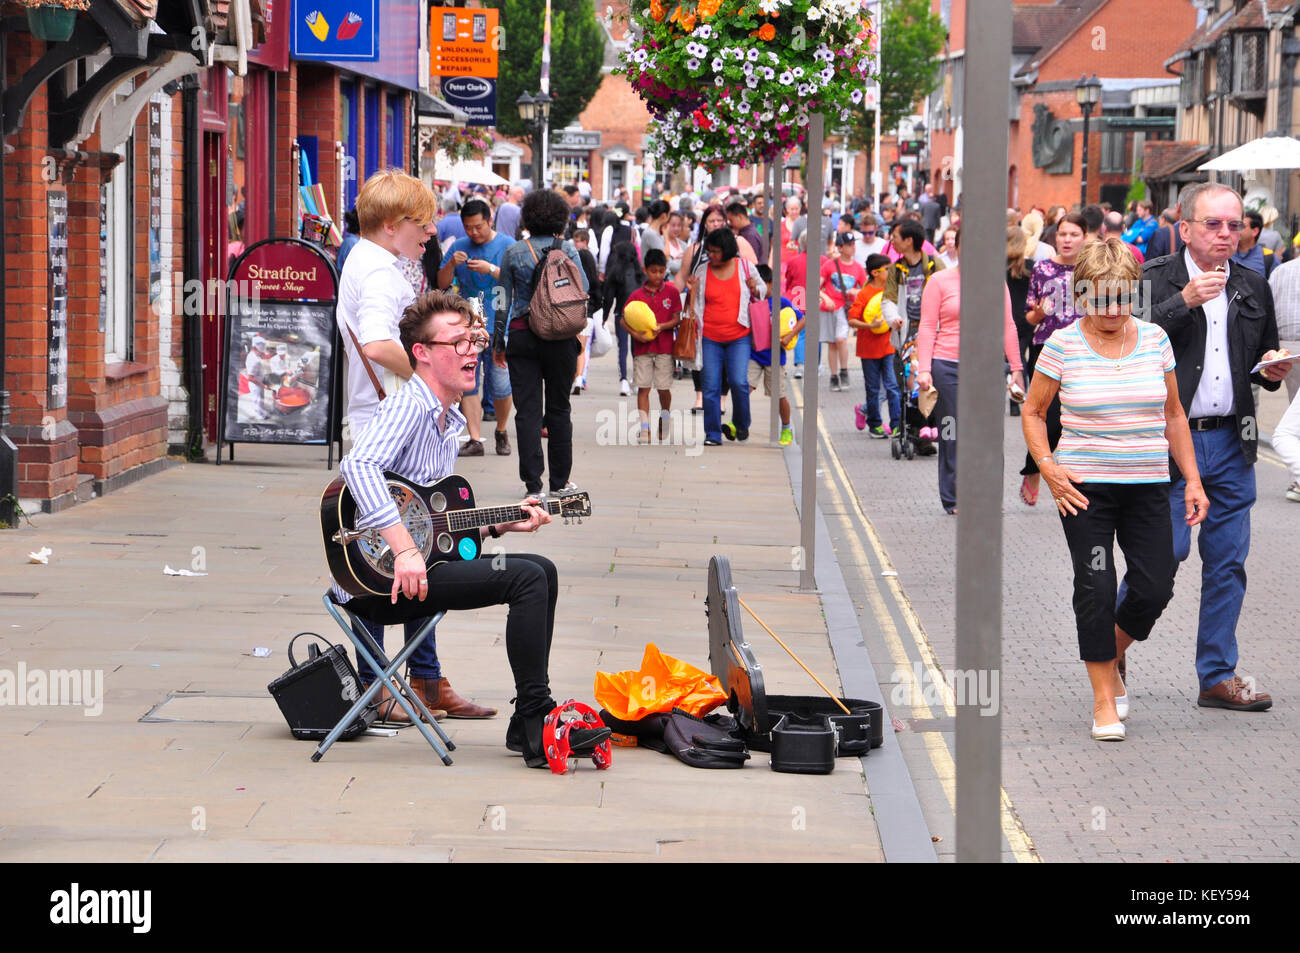 Los jóvenes músicos entretener a los turistas con canciones de los beatles en Stratford en Avon, warwickshire.uk Foto de stock